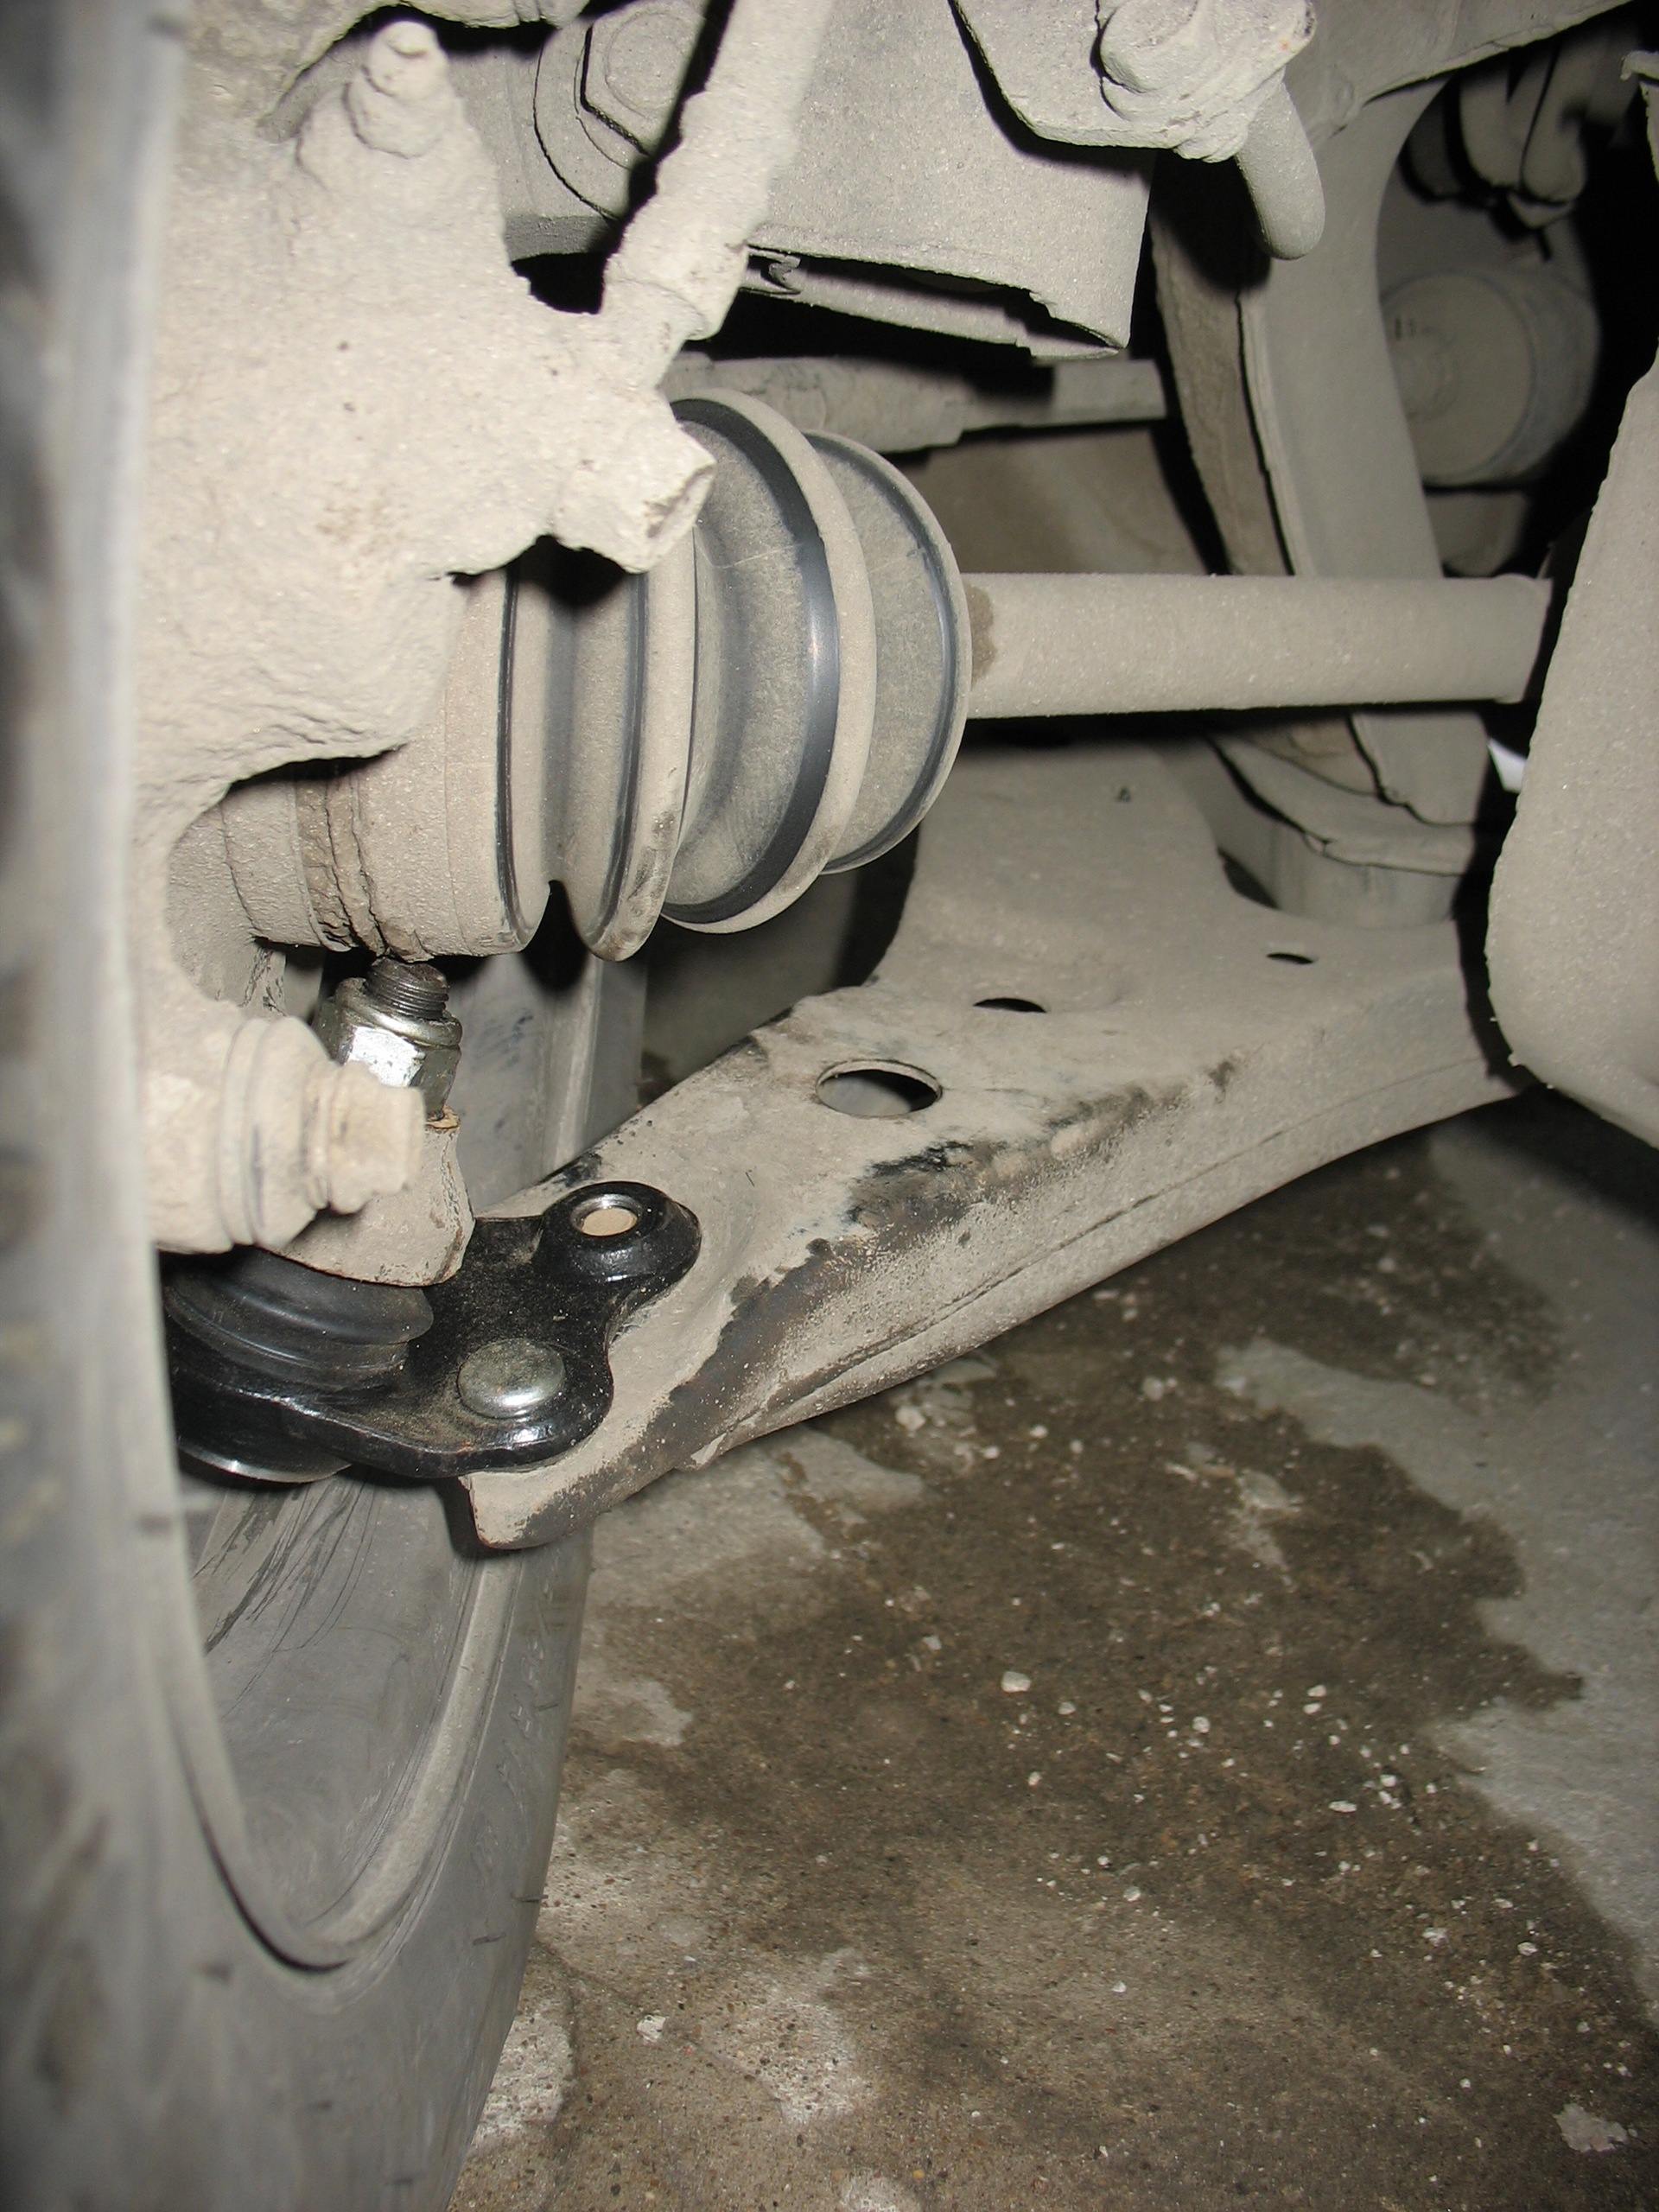 Suspension repair - Toyota Corolla 15 L 1997